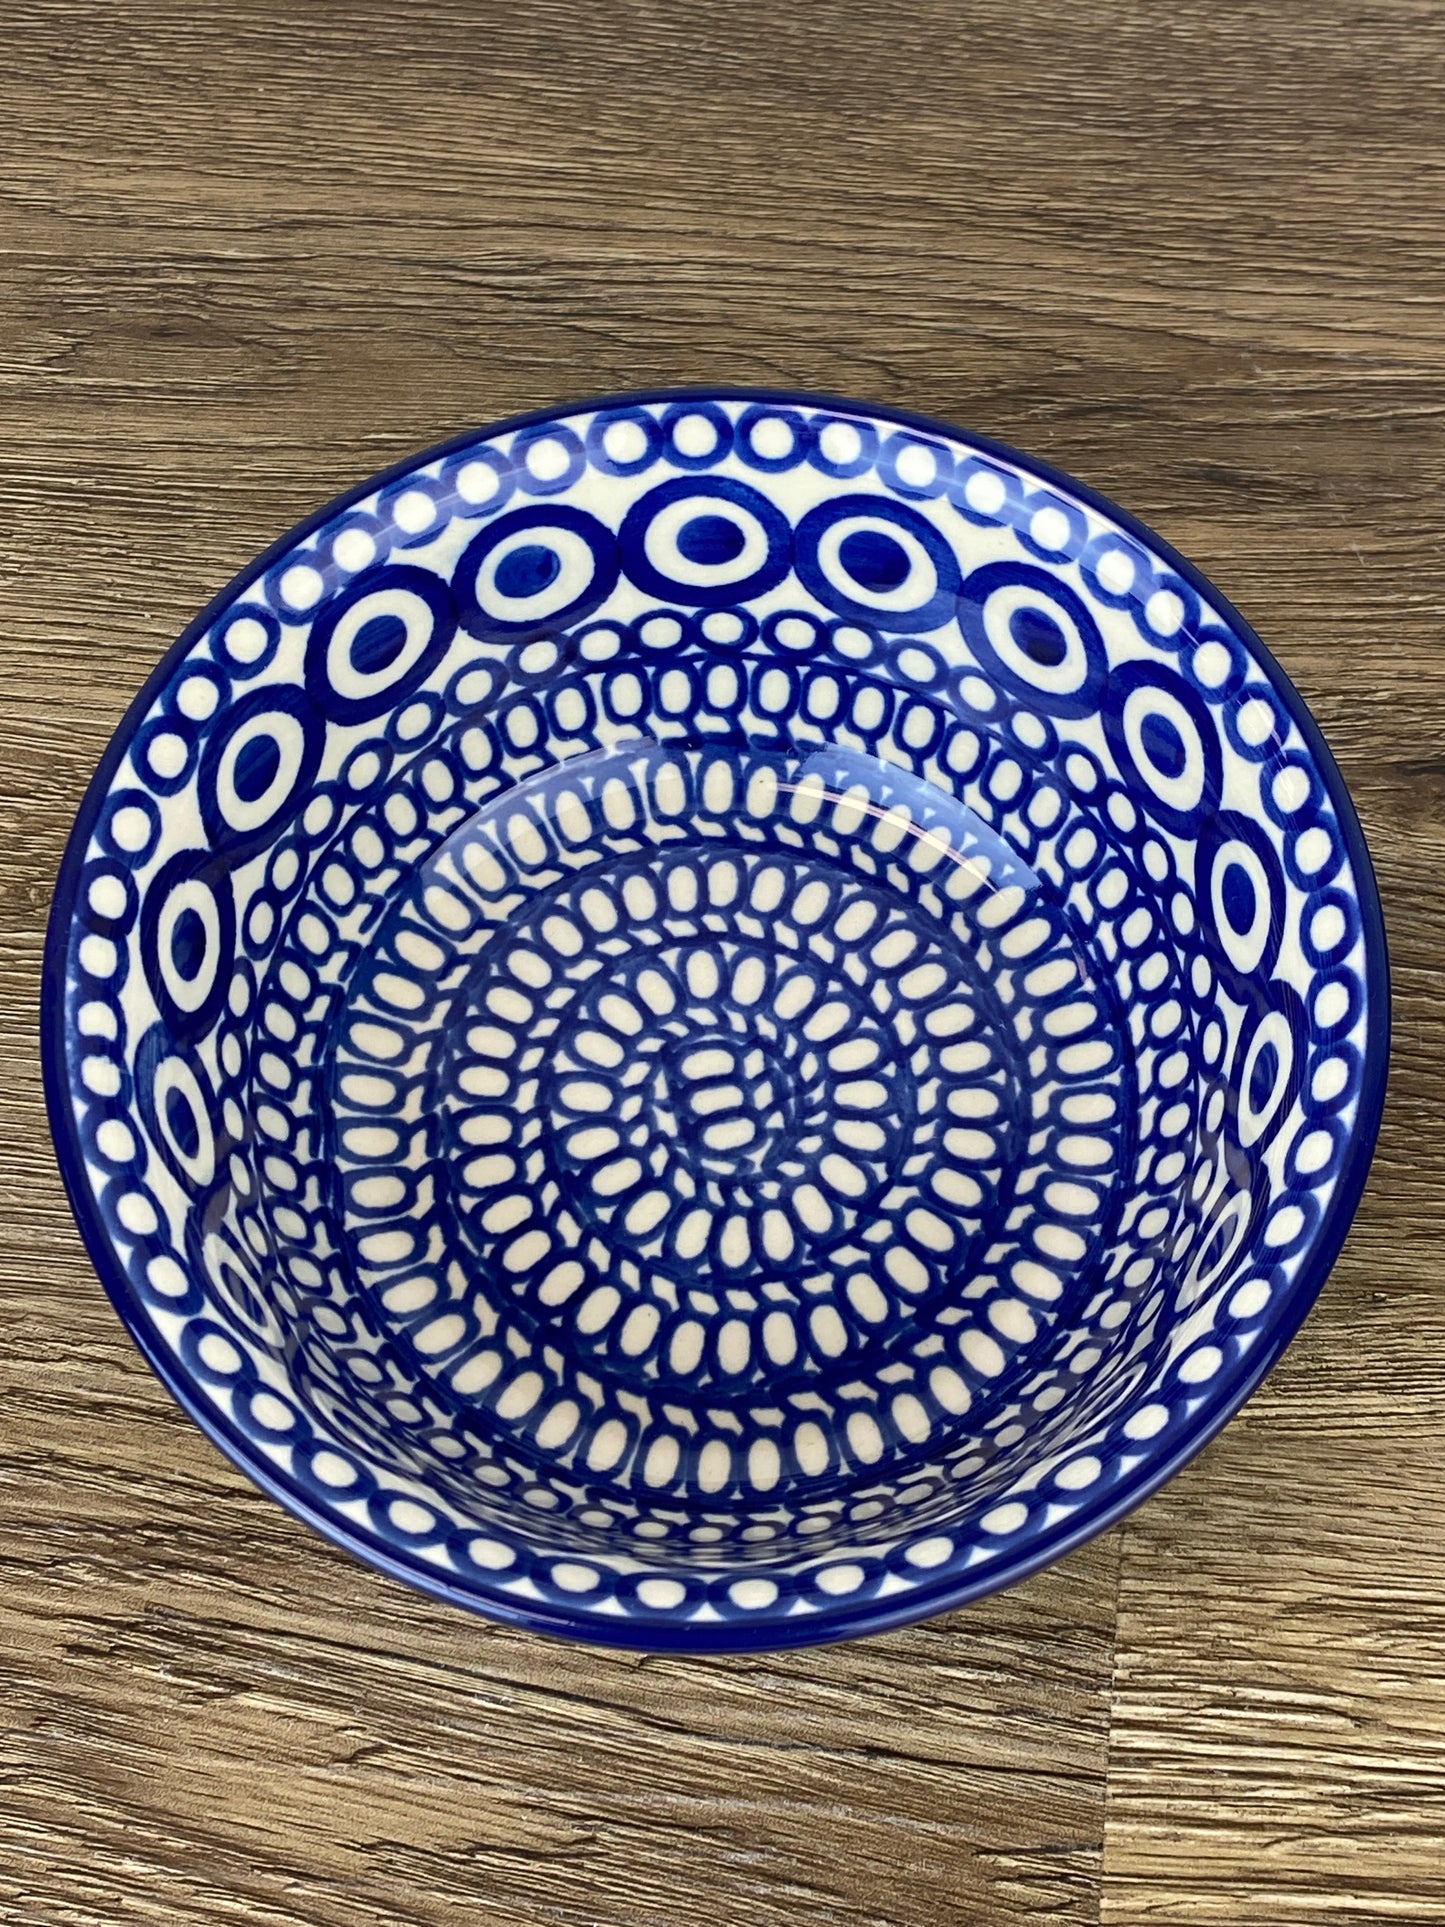 SALE Cereal Bowl - Shape 209 - Pattern 13